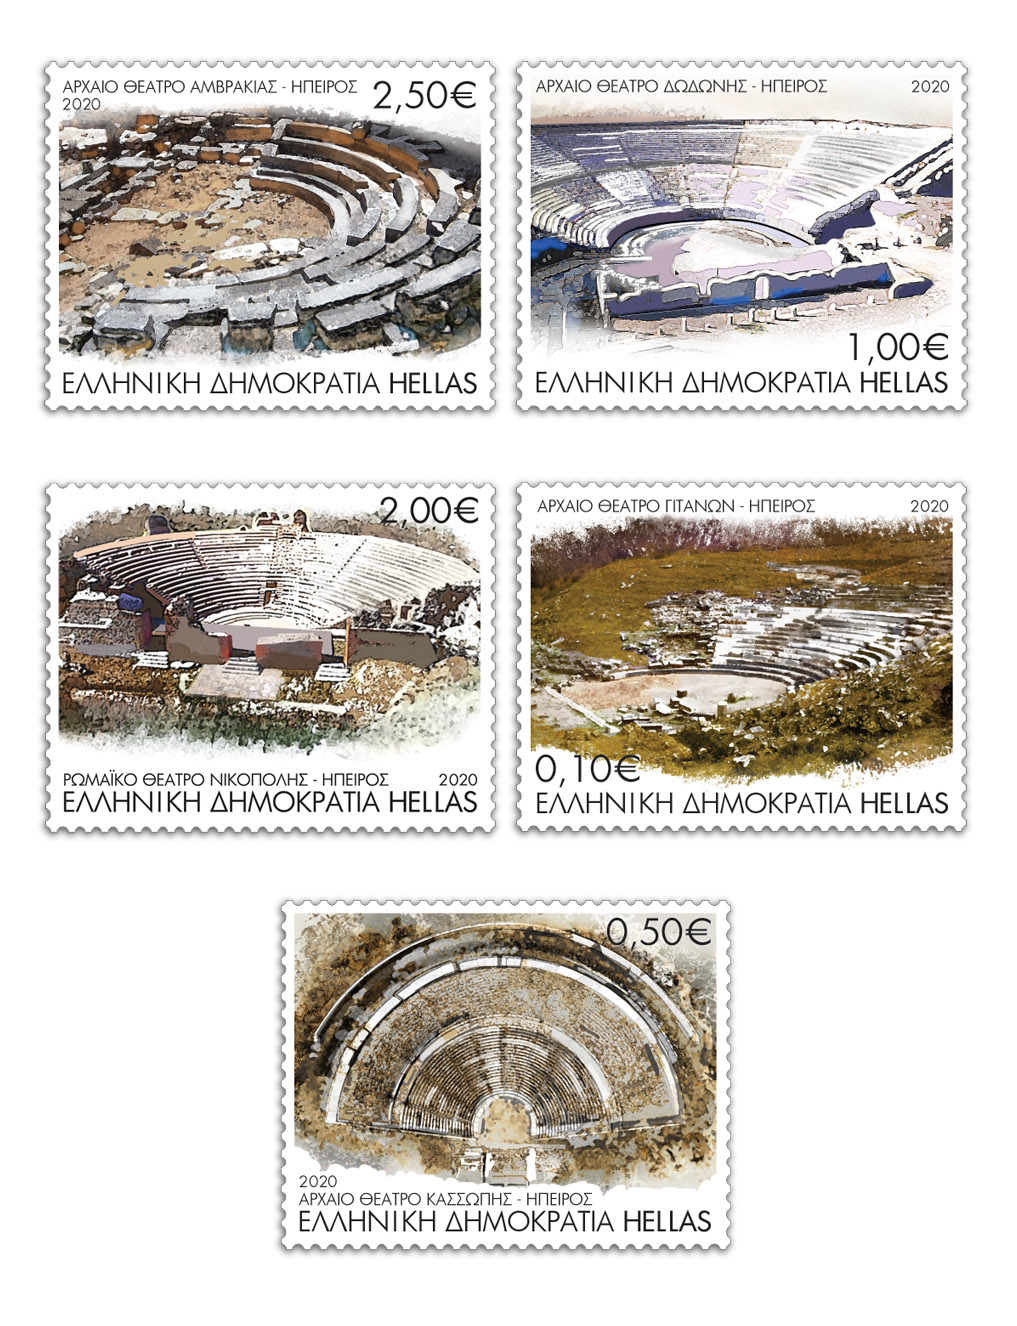 arxaia theatra stamps